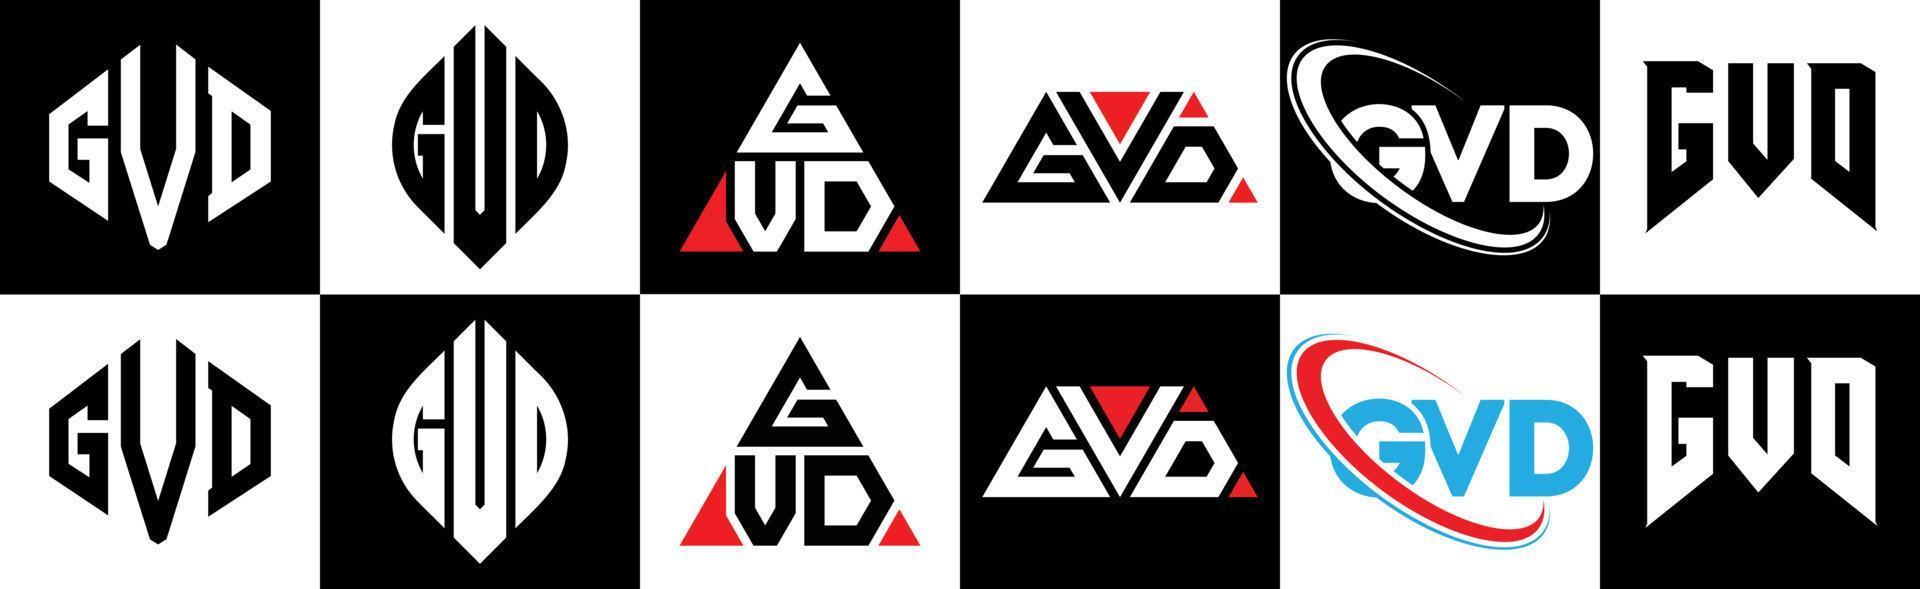 gvd-Buchstaben-Logo-Design in sechs Stilen. gvd polygon, kreis, dreieck, hexagon, flacher und einfacher stil mit schwarz-weißem farbvariationsbuchstabenlogo in einer zeichenfläche. gvd minimalistisches und klassisches logo vektor